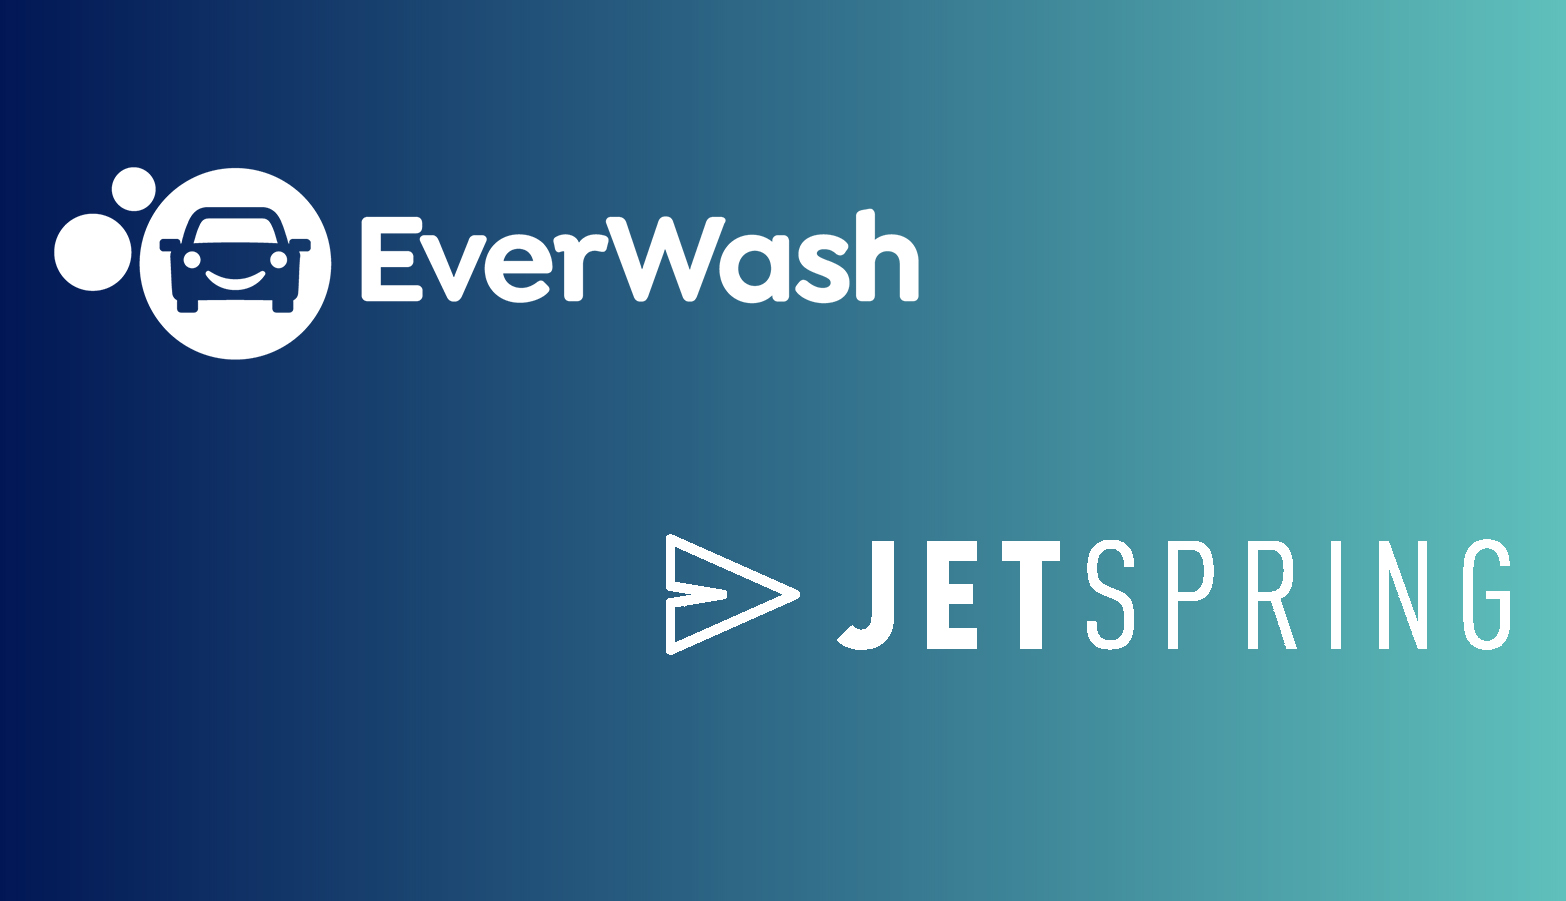 EverWash and JetSpring